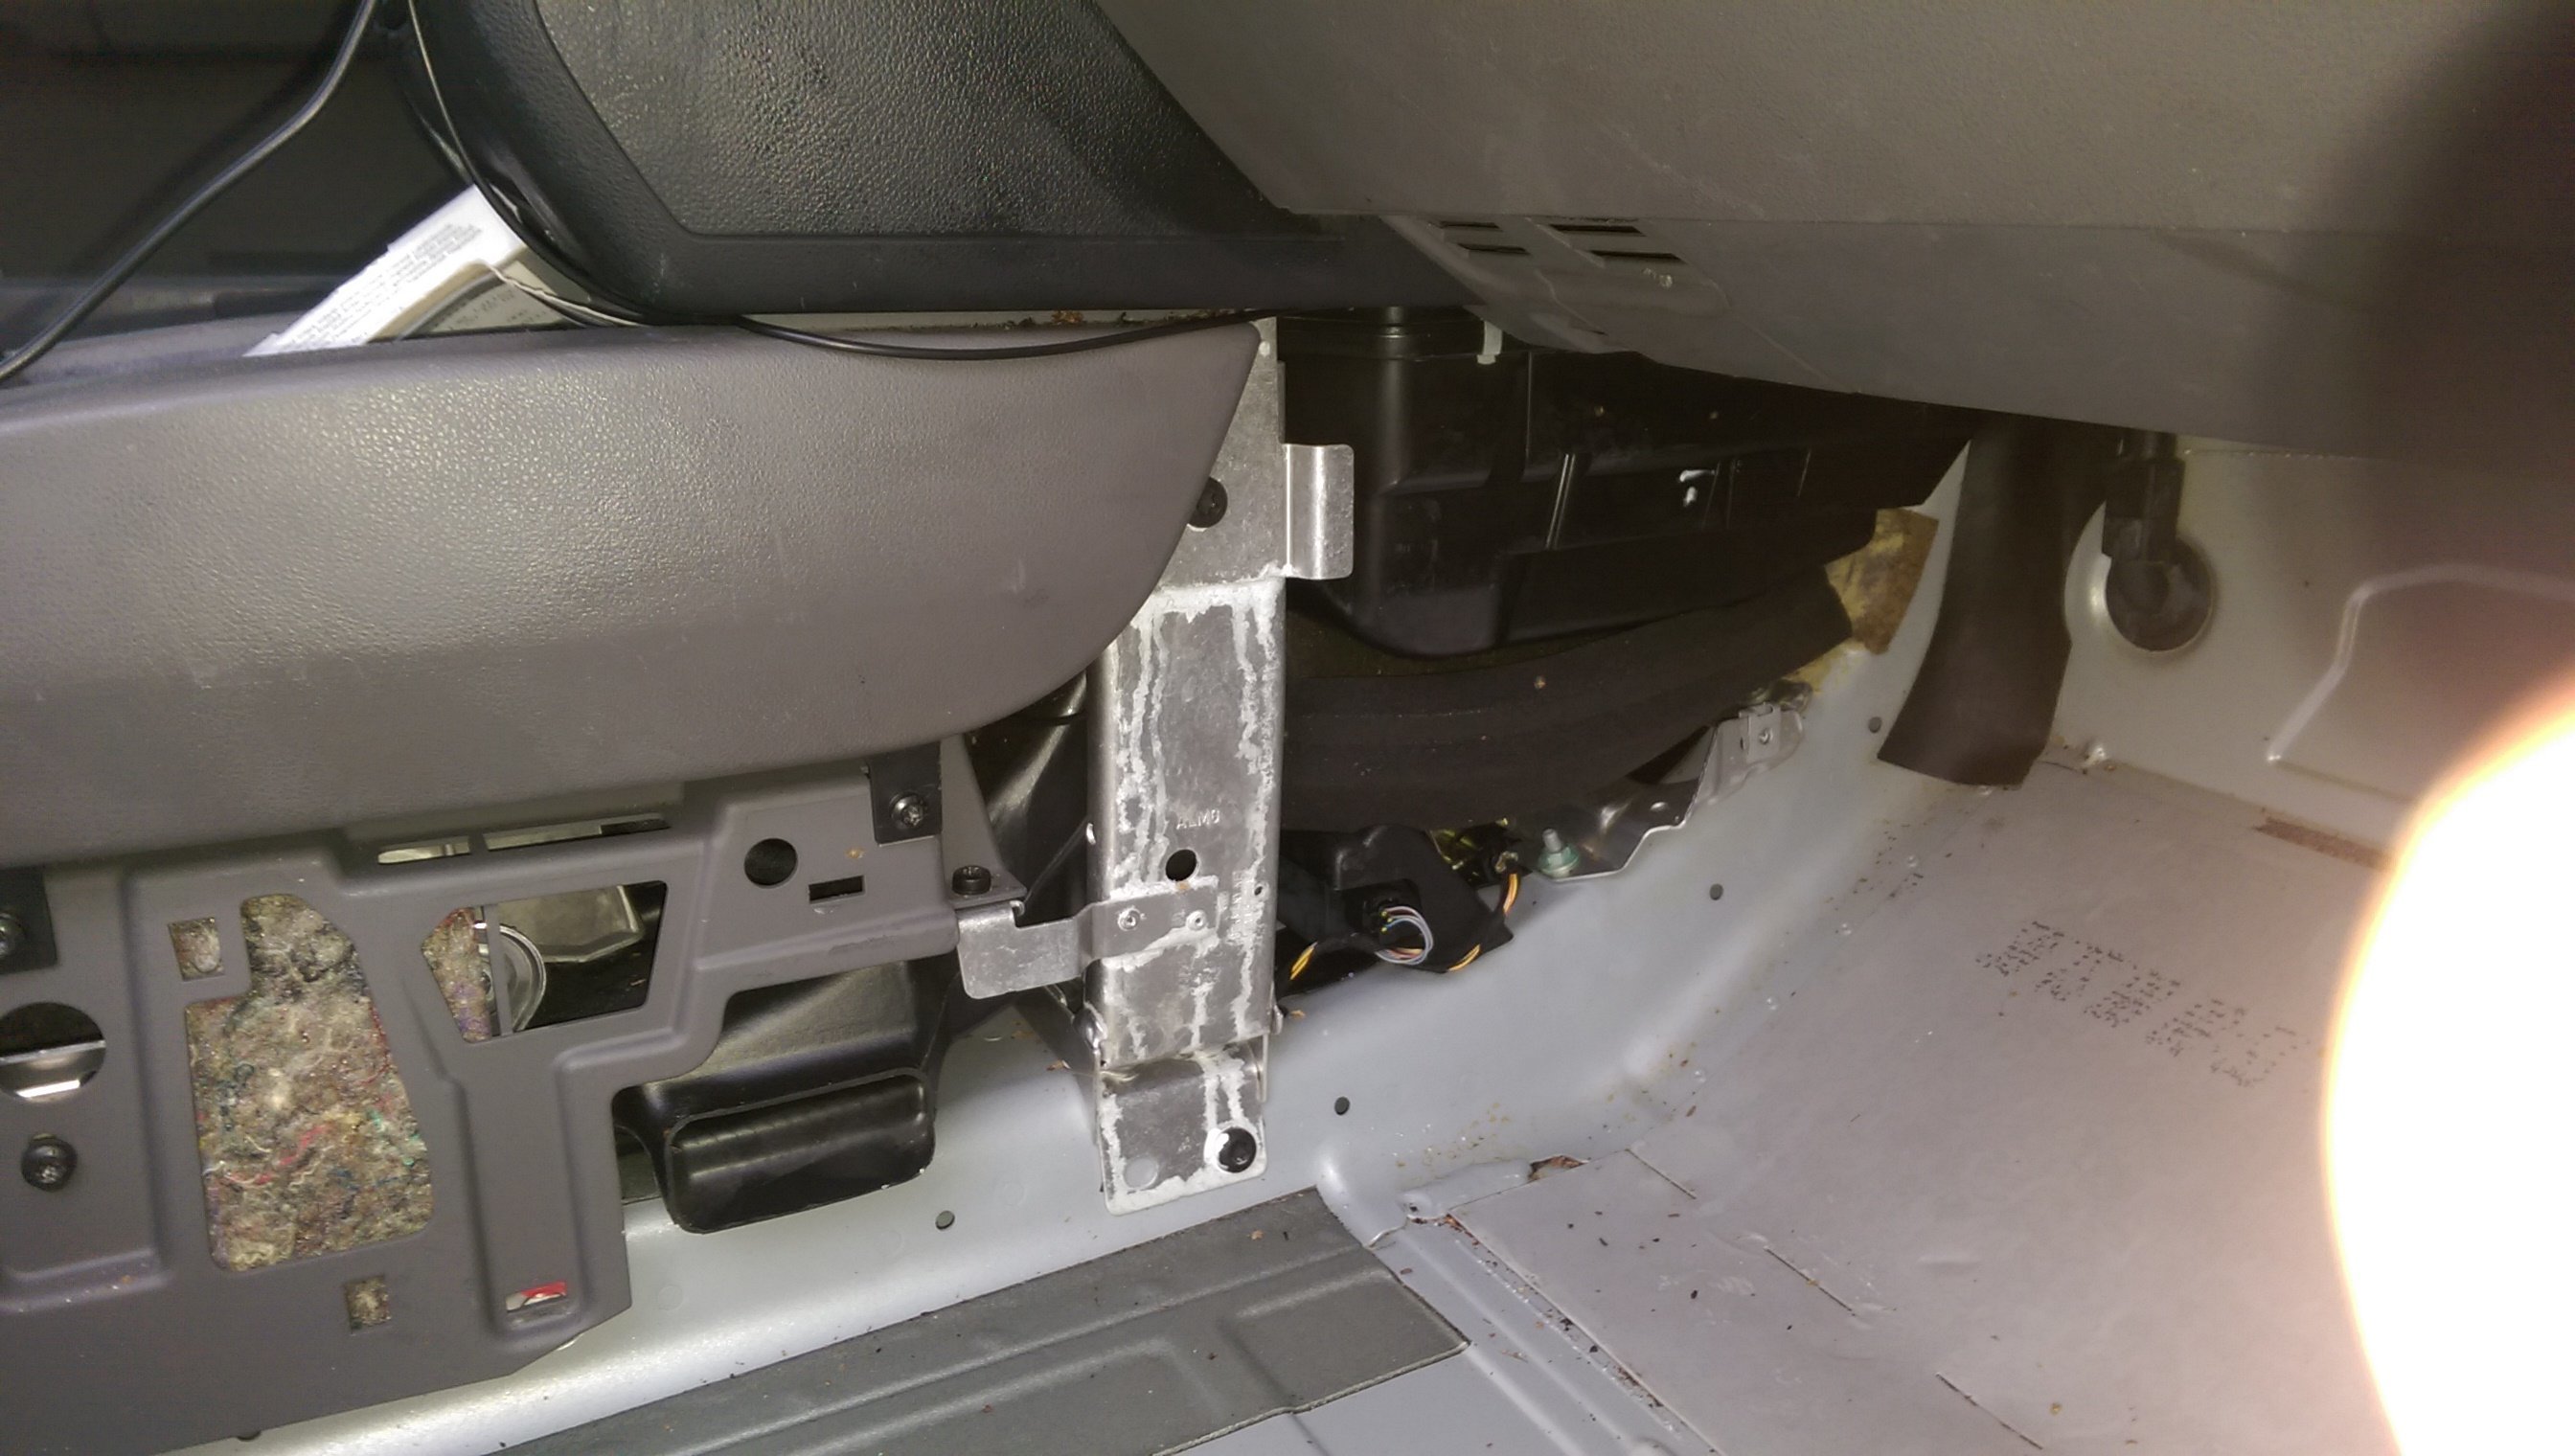 Fussraum hinten rechts nass (Oelige Substanz) - Technik - Audi A2